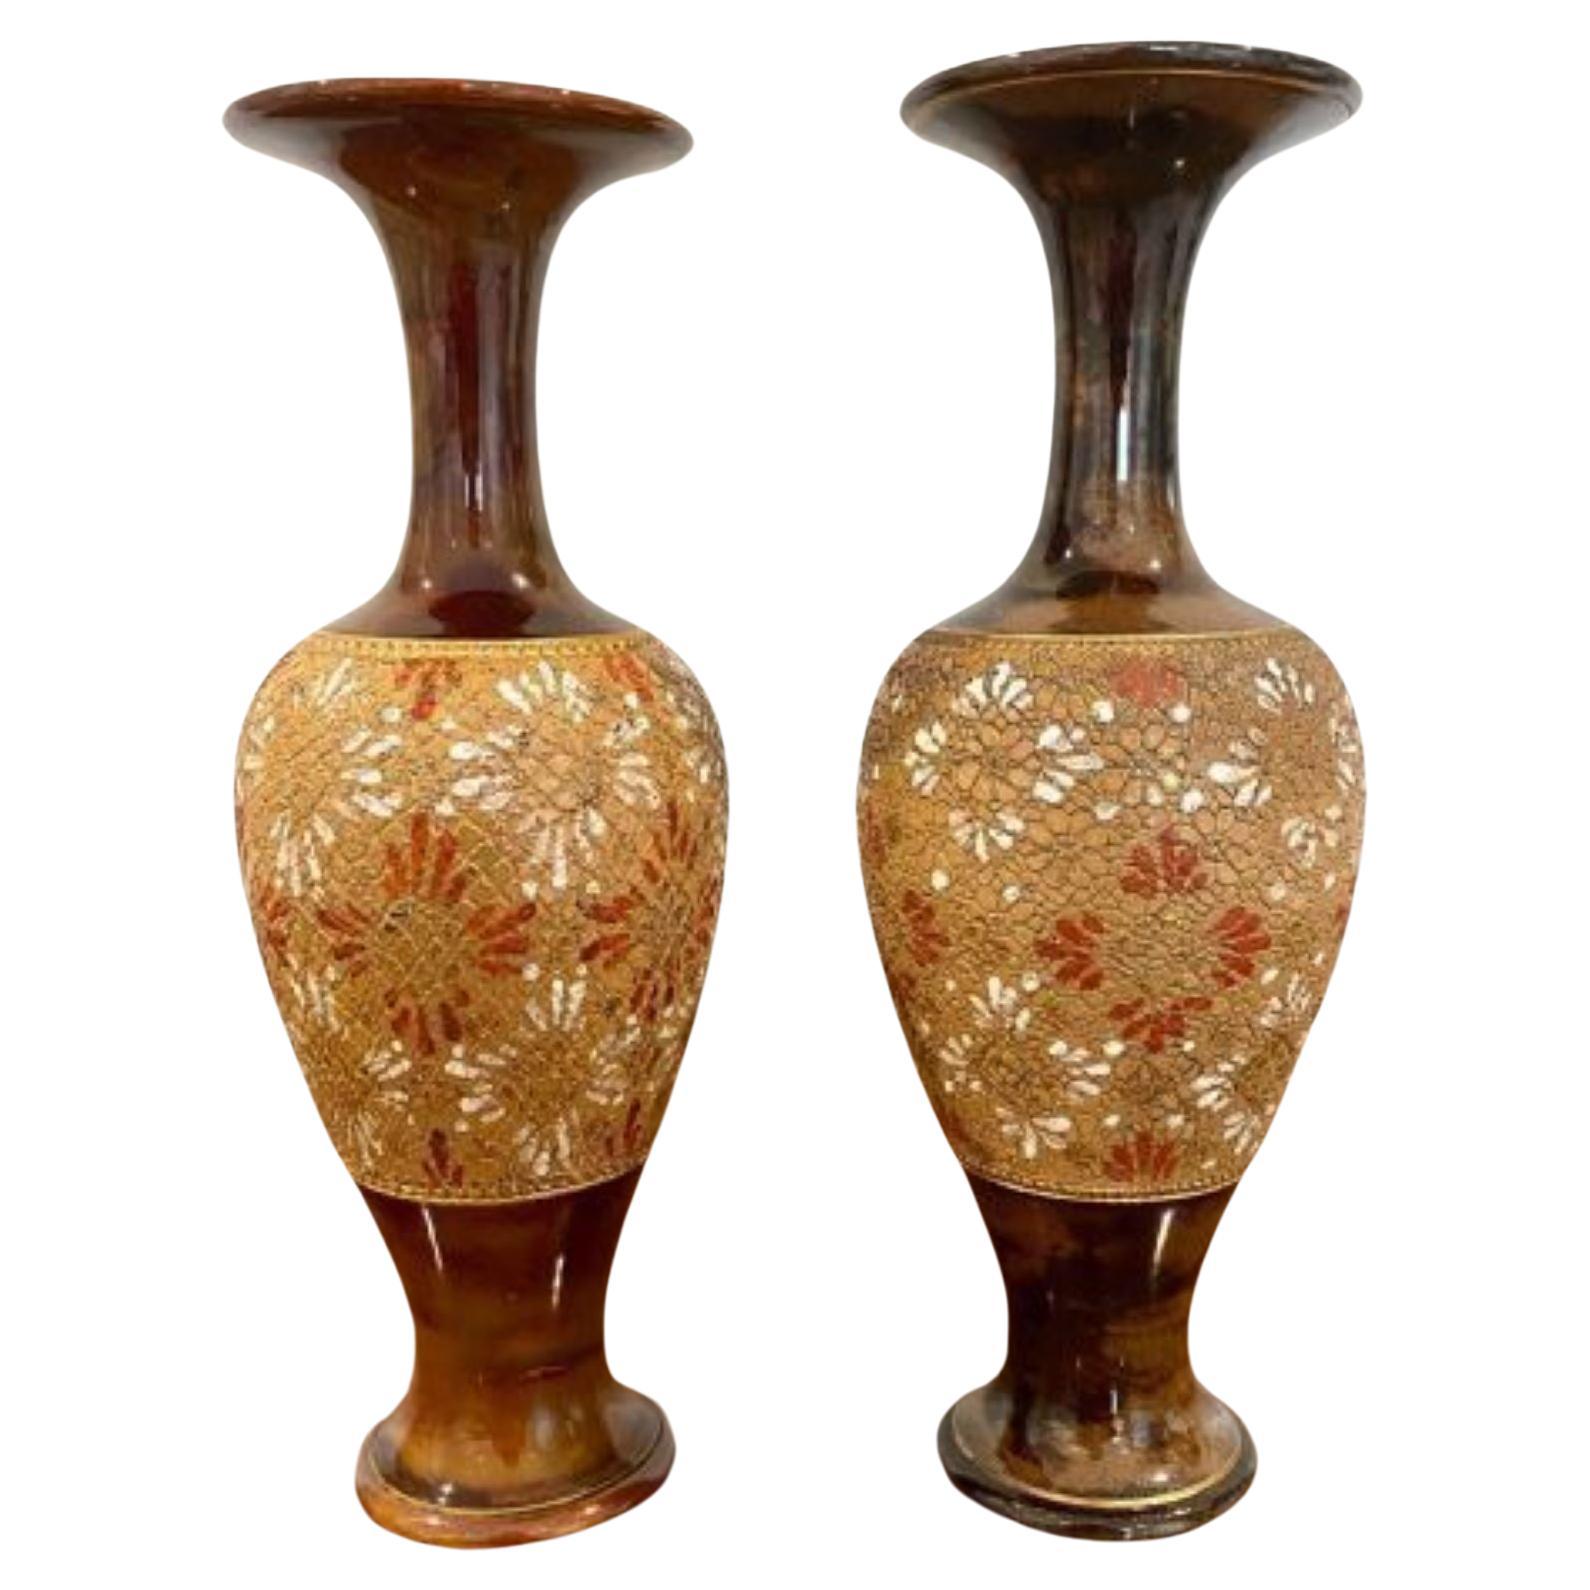 Paire de vases Doulton victoriens anciens de qualité